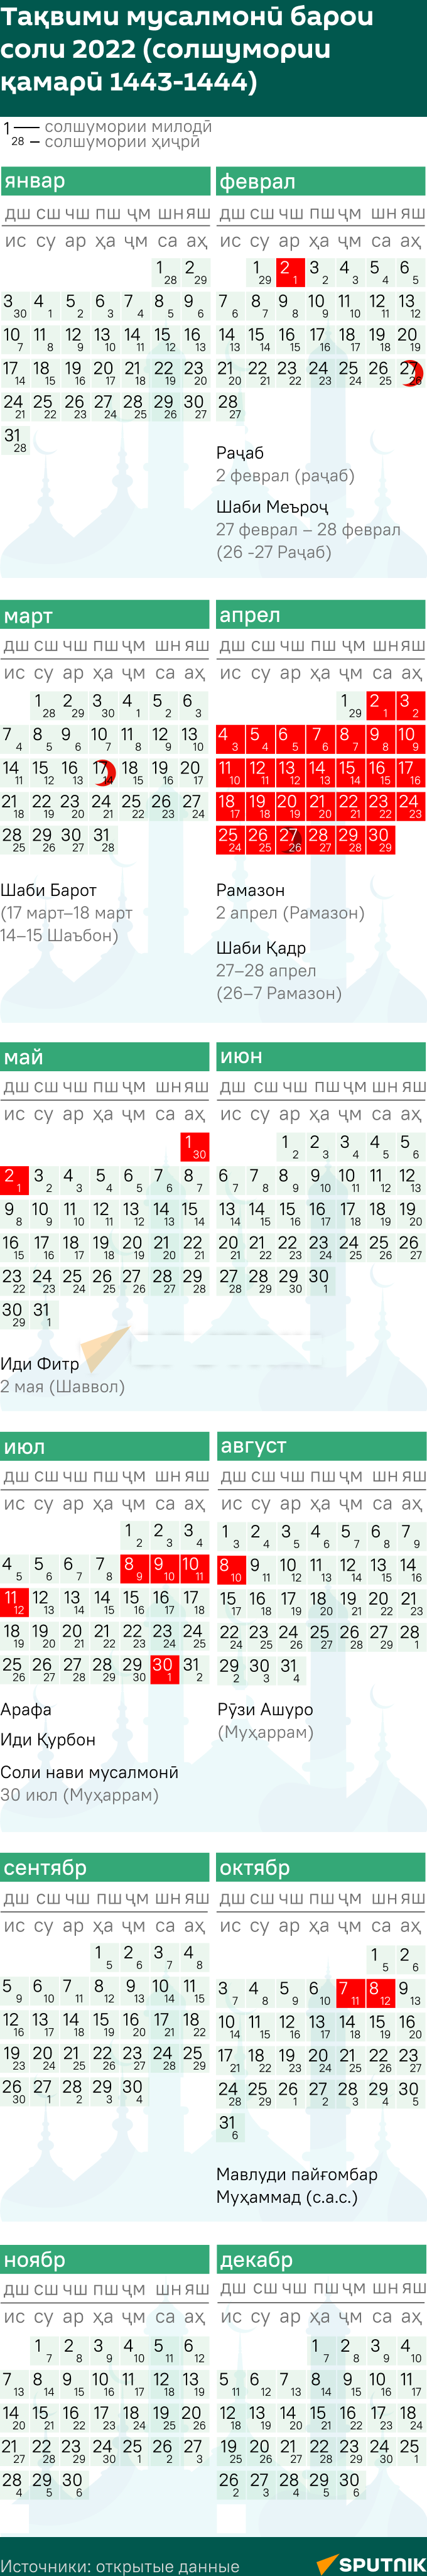 Мусульманский календарь tj mod - Sputnik Тоҷикистон